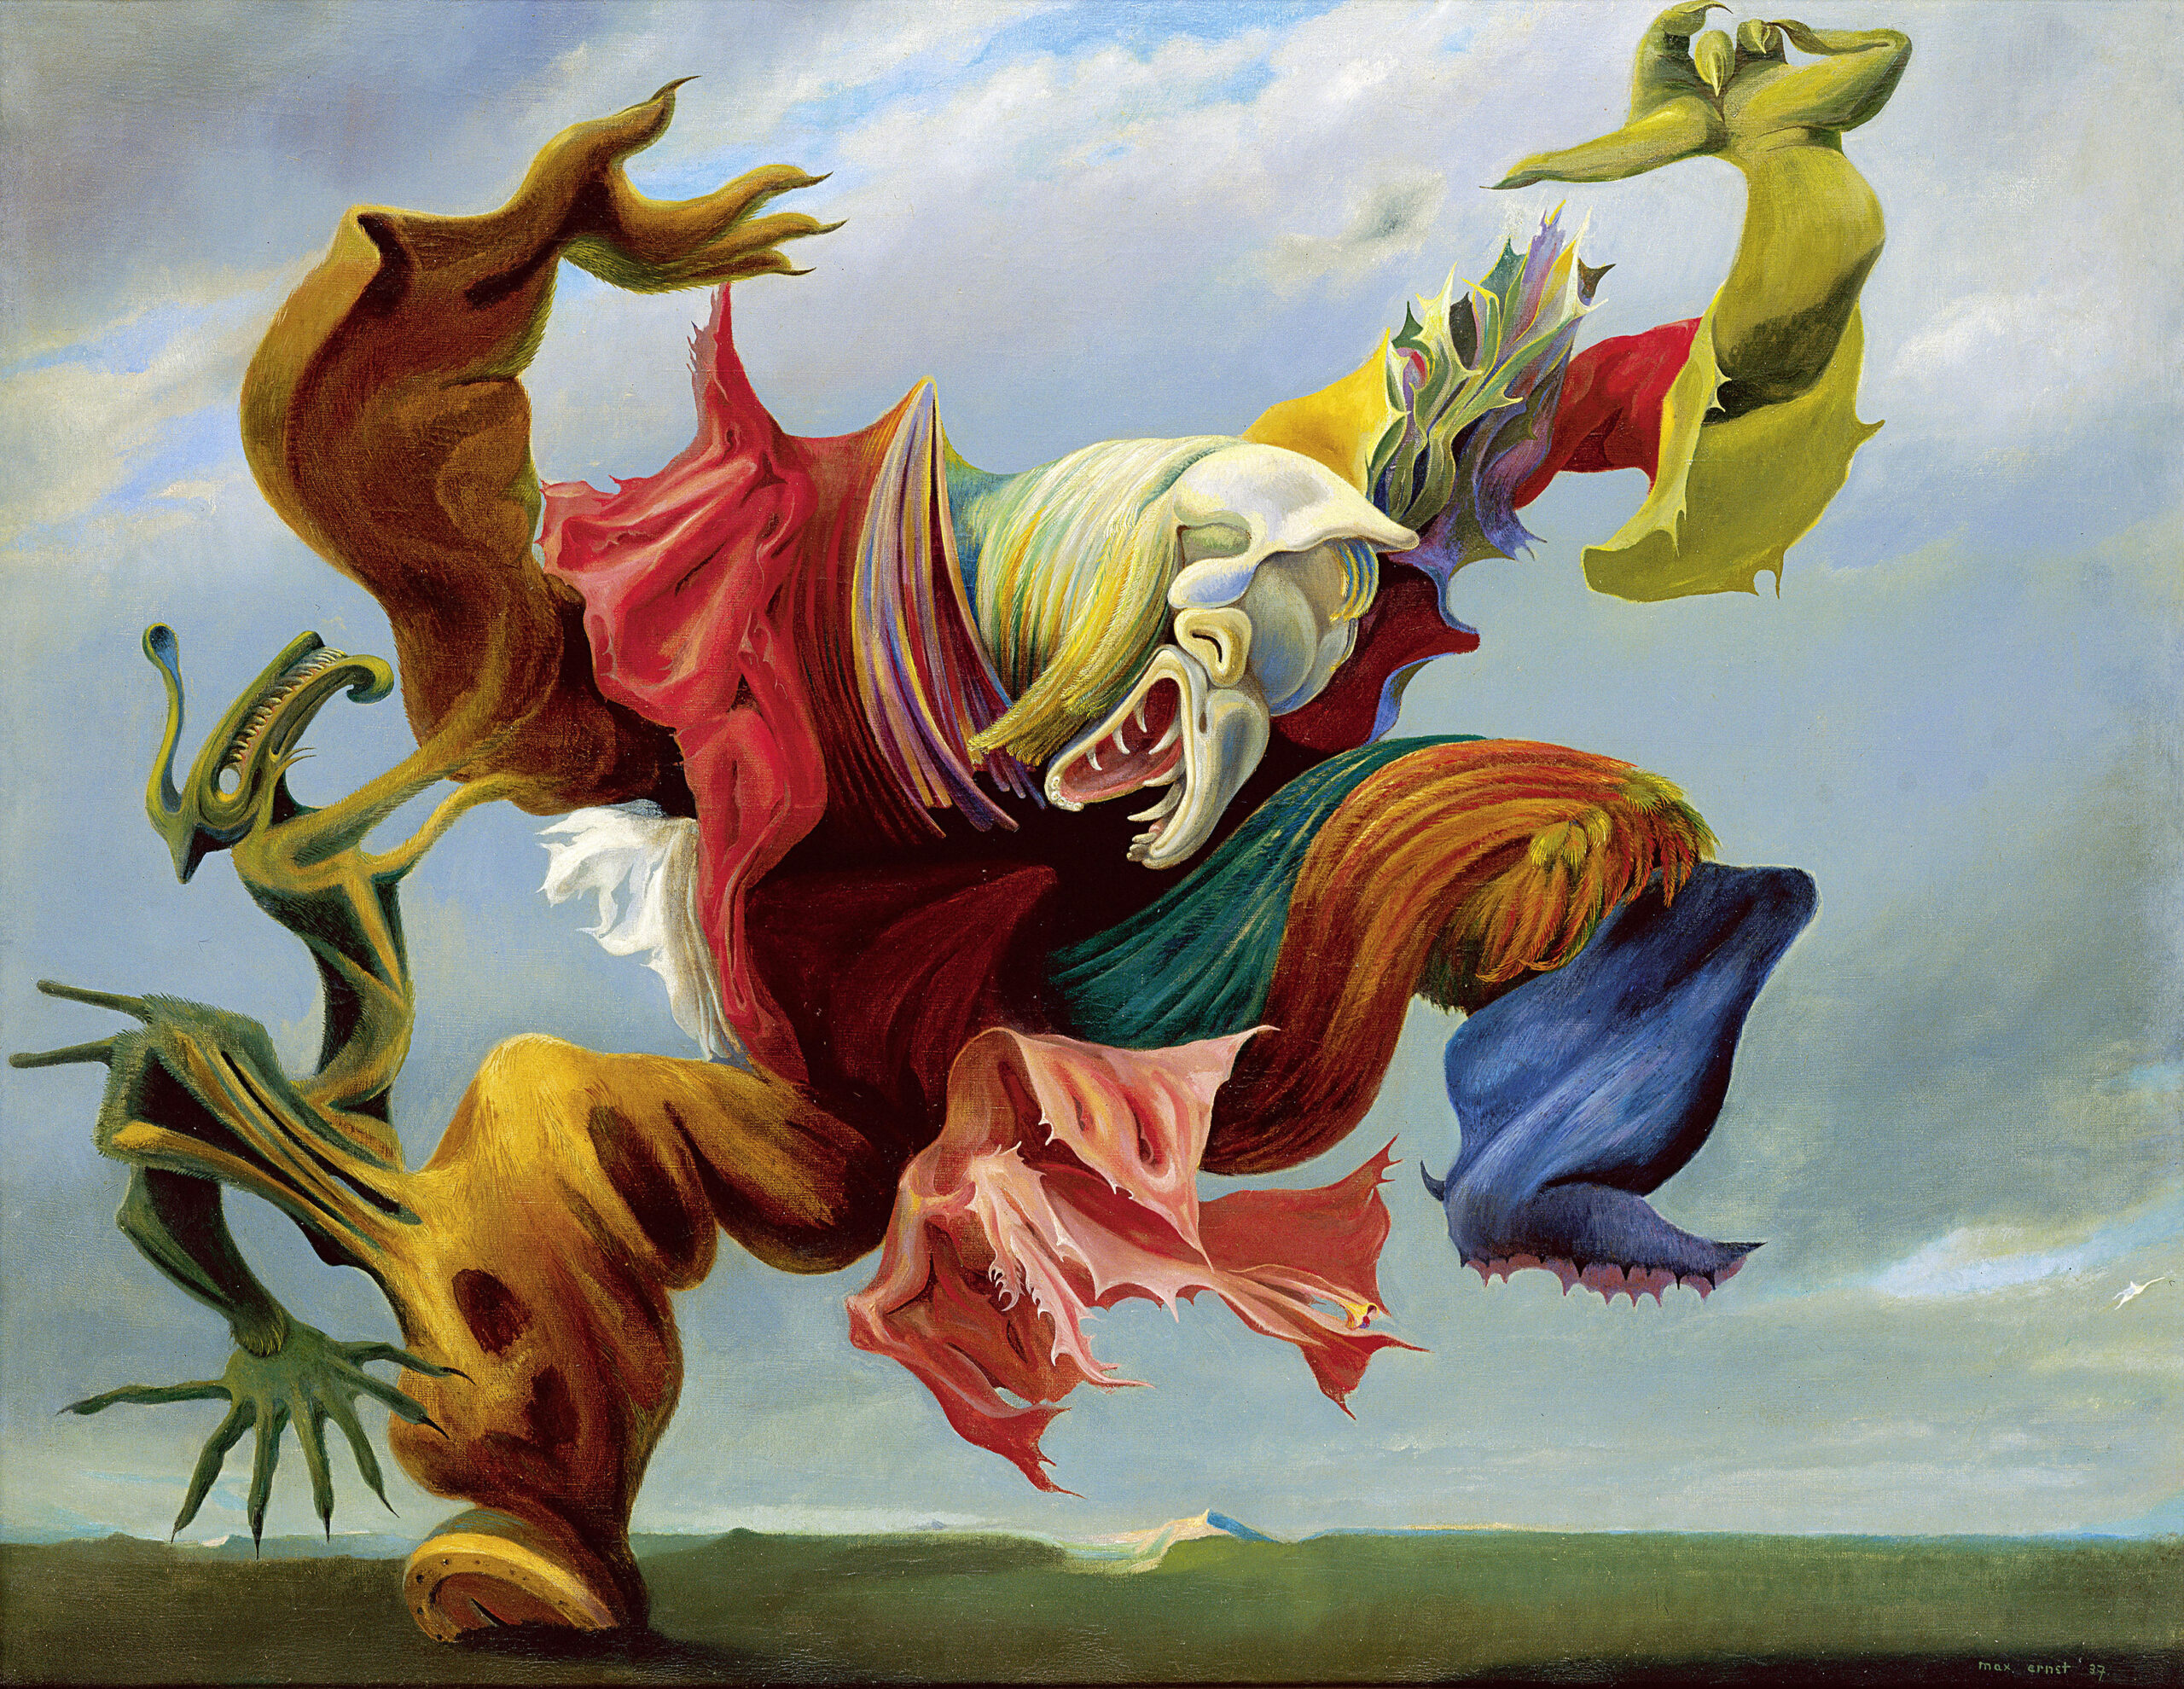 Max Ernst L’angelo del focolare, 1937, Olio su tela, 114 x 146 cm, Collezione privata, Svizzera Classicpaintings Alamy Stock Photo © Max Ernst by SIAE 2022